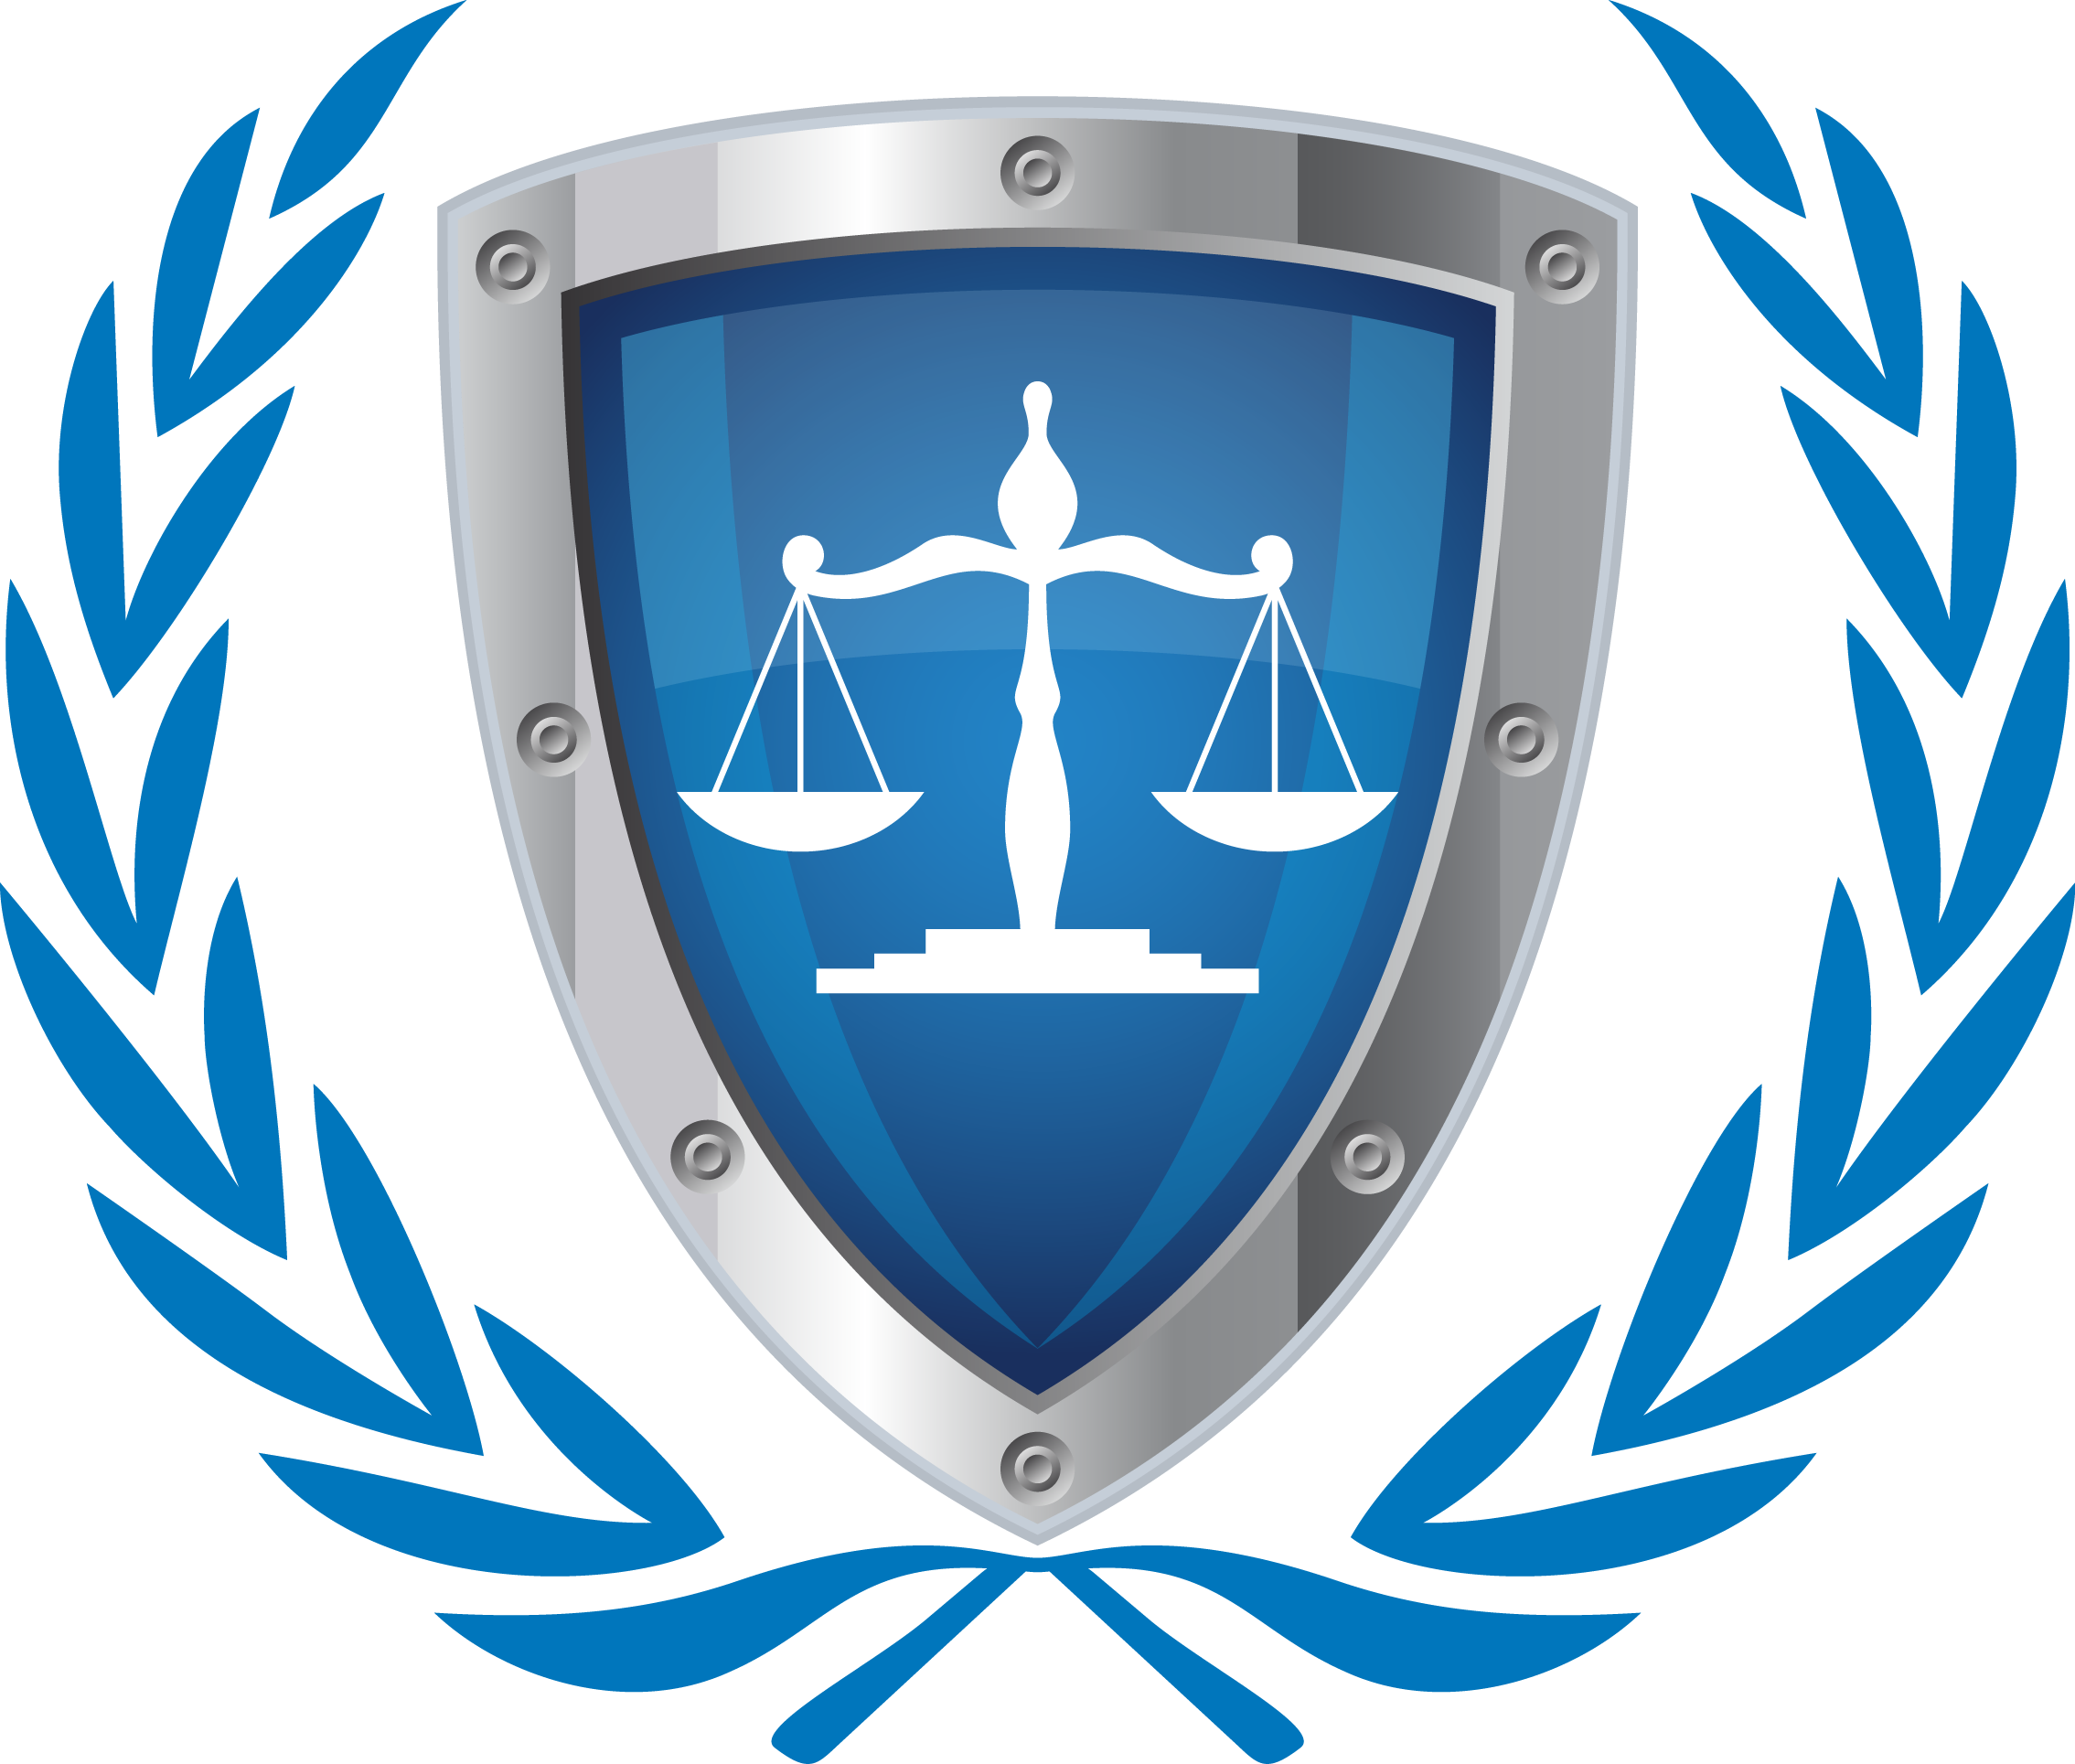 Правовая организация сайта. Эмблемы. Логотип адвоката. Эмблема юриспруденции. Юридические значки.